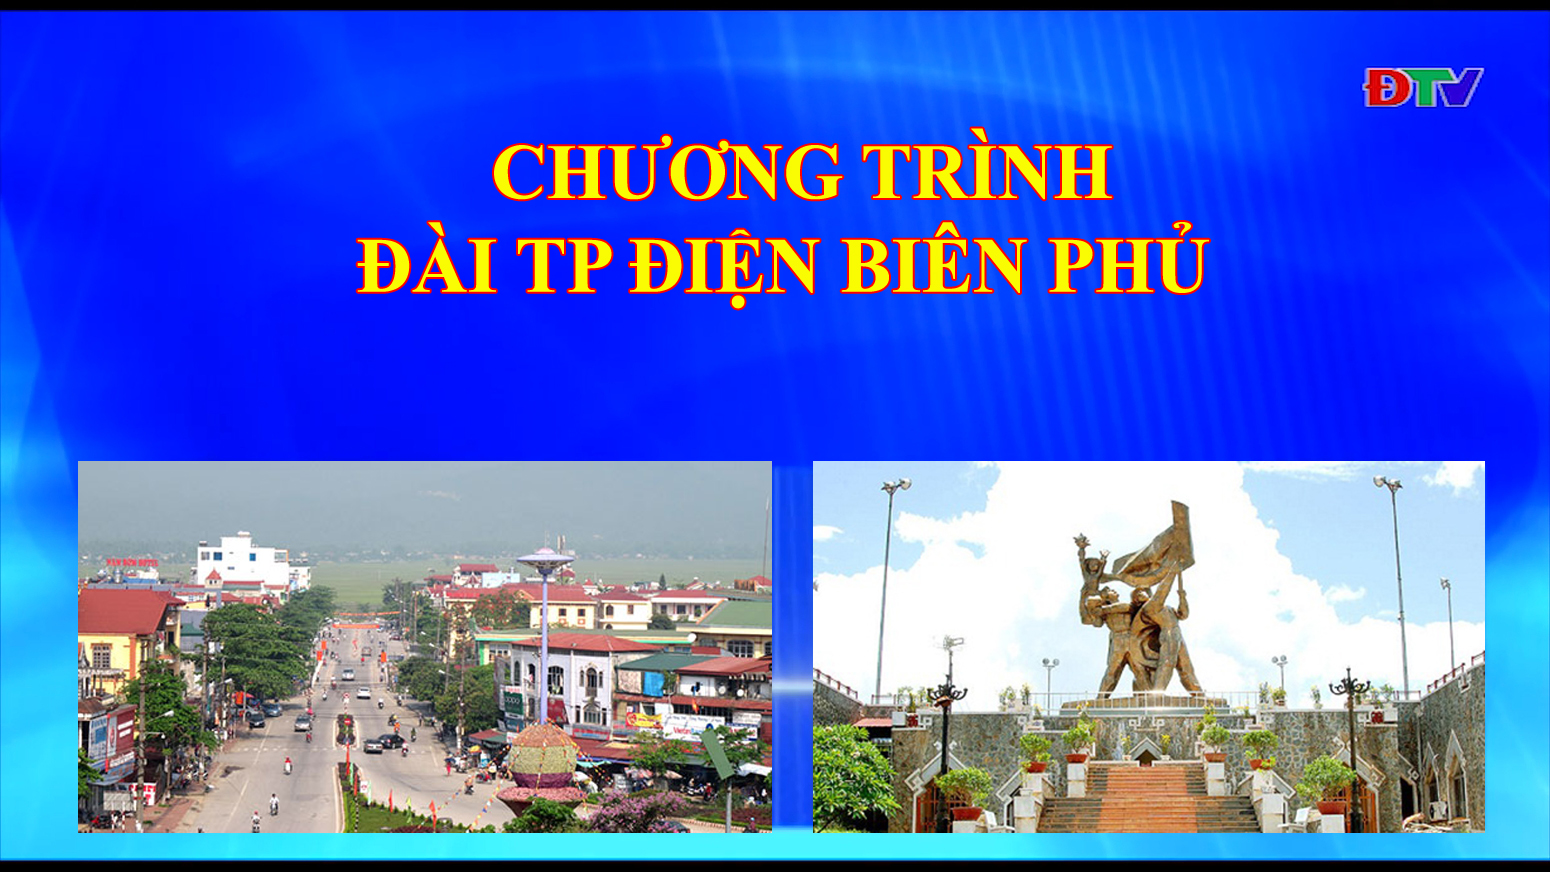 Đài thành phố Điện Biên Phủ (ngày 5-11-2019)